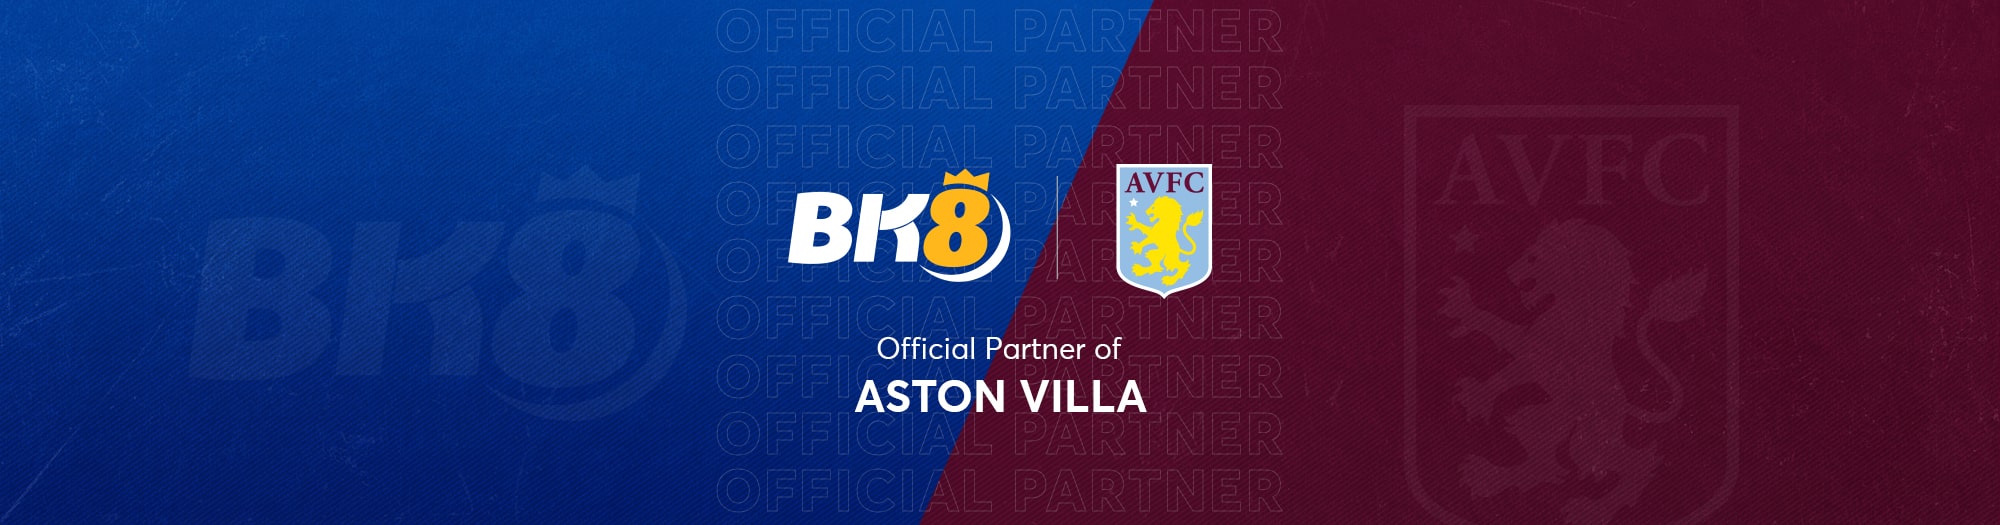 Bk8 and aston villa partnership